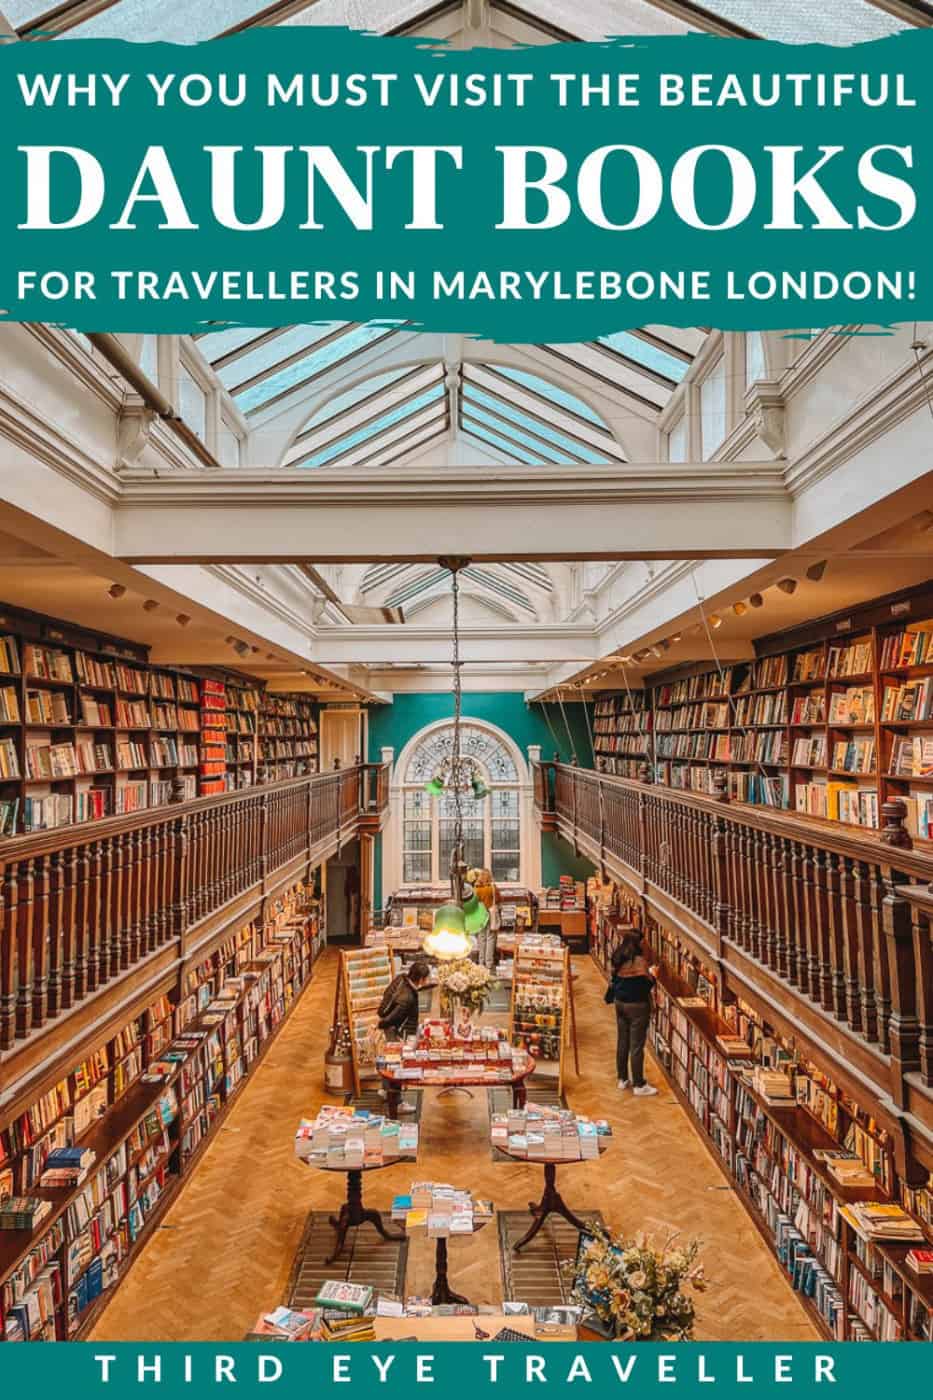 伦敦玛丽莱博恩的道特书店